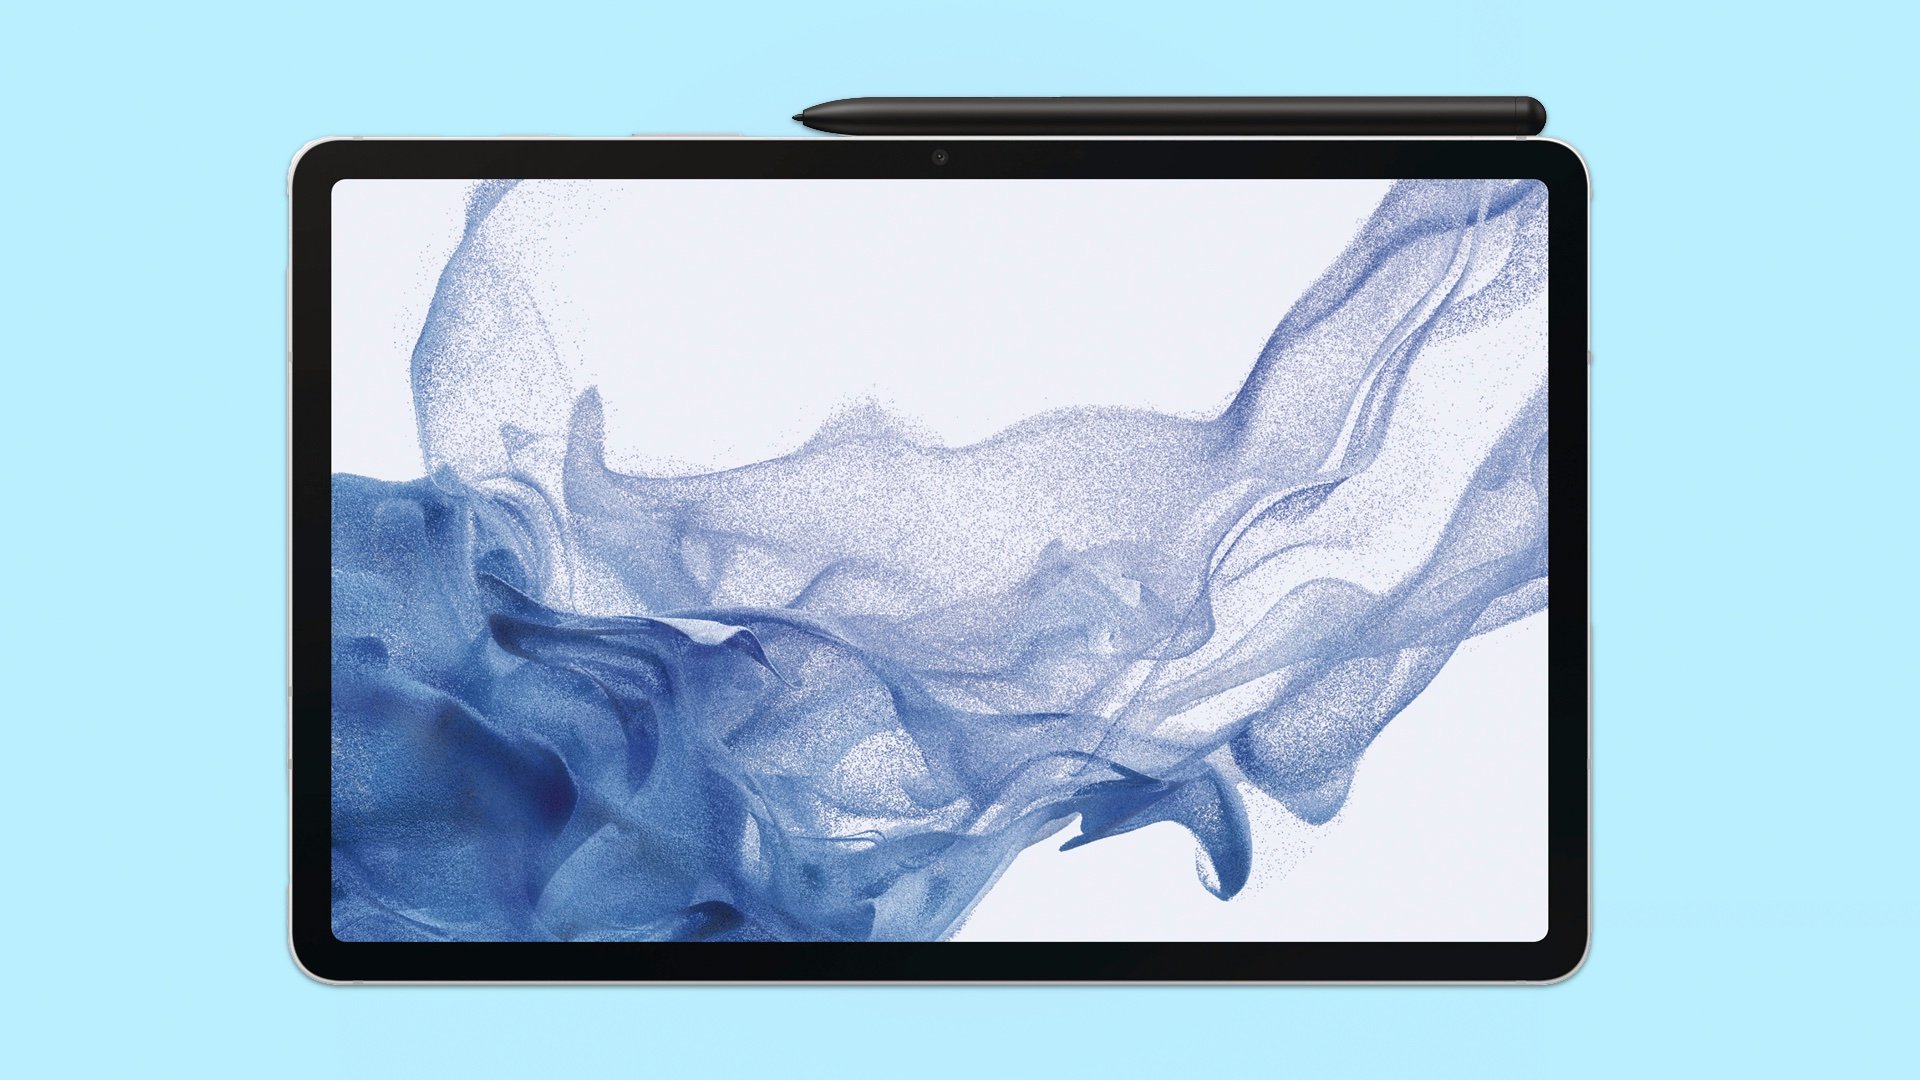 Galaxy Tab S8 images: Những hình ảnh về Galaxy Tab S8 sẽ khiến bạn choáng ngợp với thiết kế siêu mỏng và cực kỳ tinh tế. Khả năng hiển thị ấn tượng và tính năng đa dạng cũng là điều gì khiến chiếc máy này trở thành một trong những sản phẩm đáng mong chờ nhất. Hãy xem những hình ảnh liên quan để thấy rõ nét hơn!